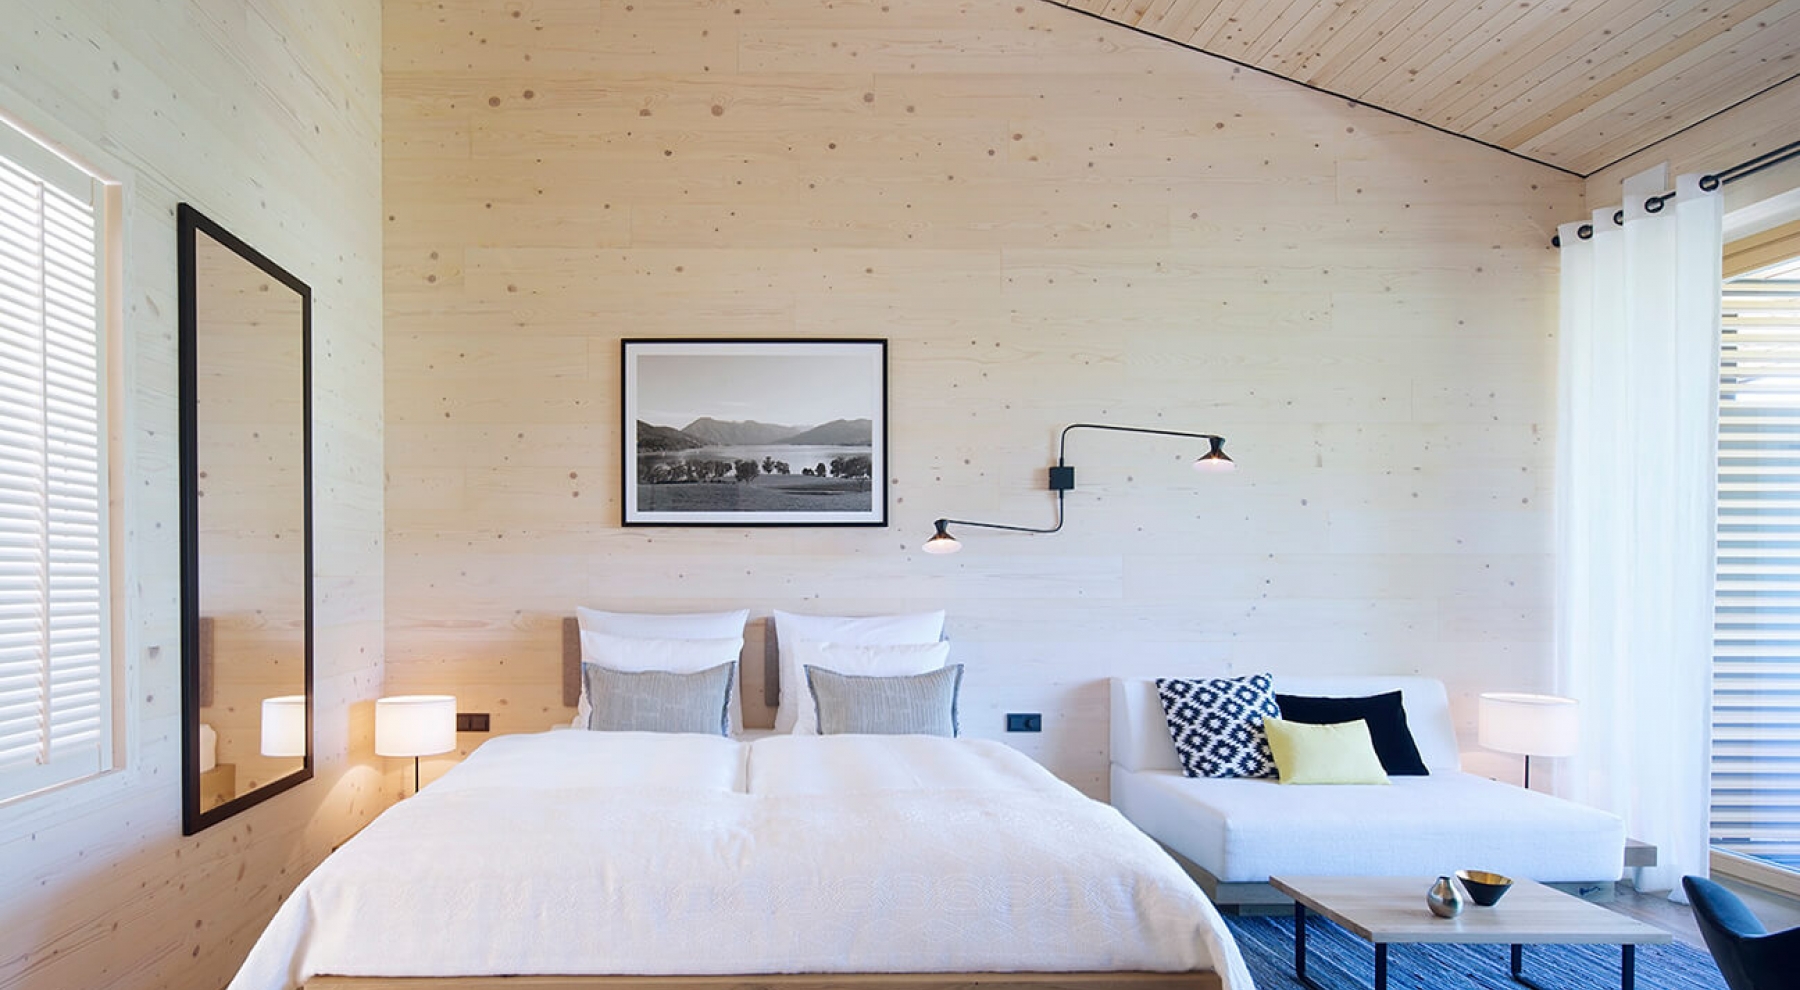 Blick in ein Schlafzimmer im Alpenchalet am Tegernsee mit einem großen Doppelbett, einem weißen Sofa mit Couchtisch aus Holz, einem blau-grauem Teppich und hellen, holzfarben Wänden.